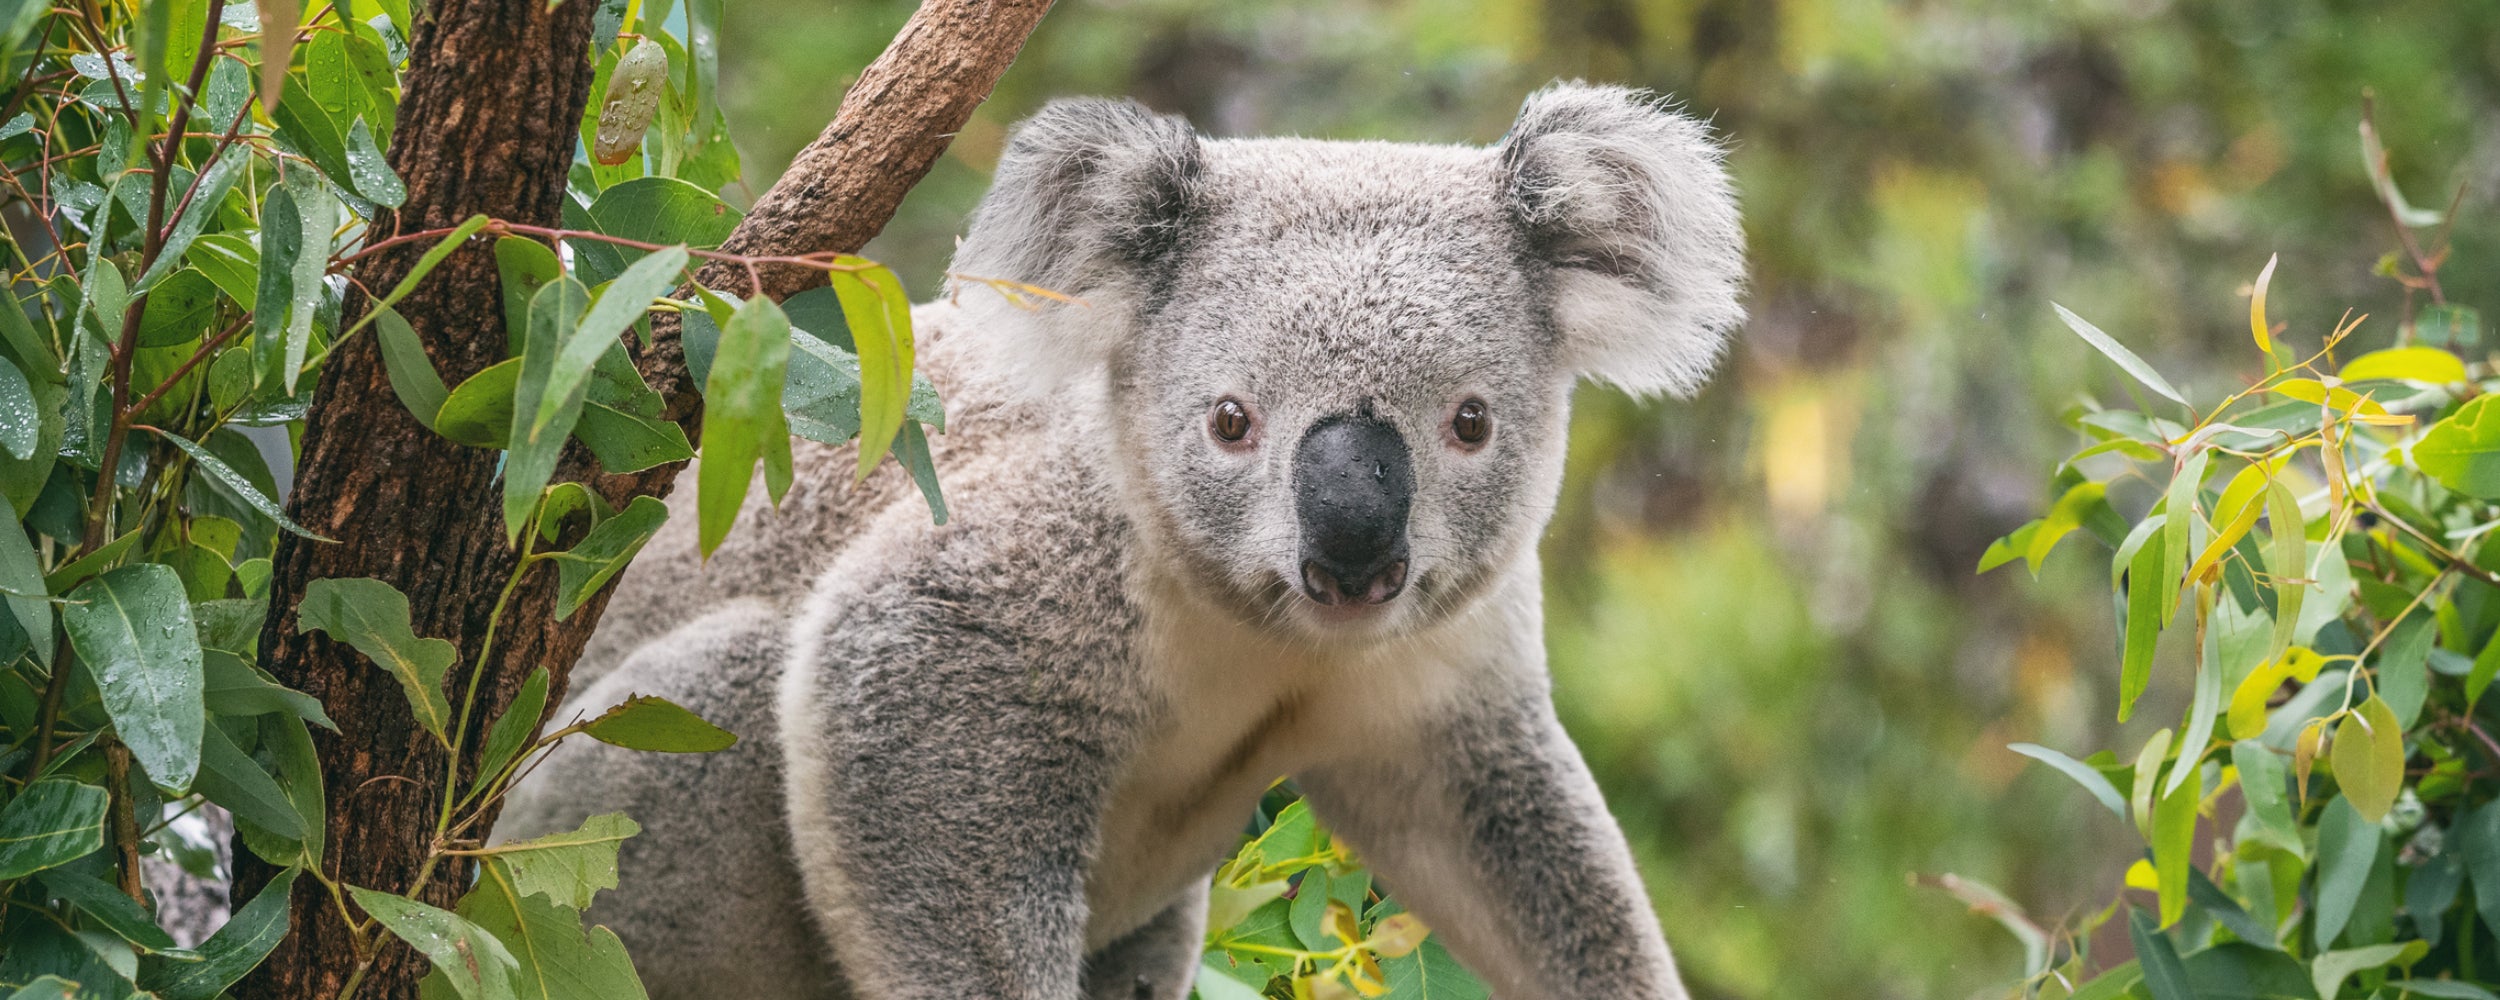 Australian Koala sitting on a branch